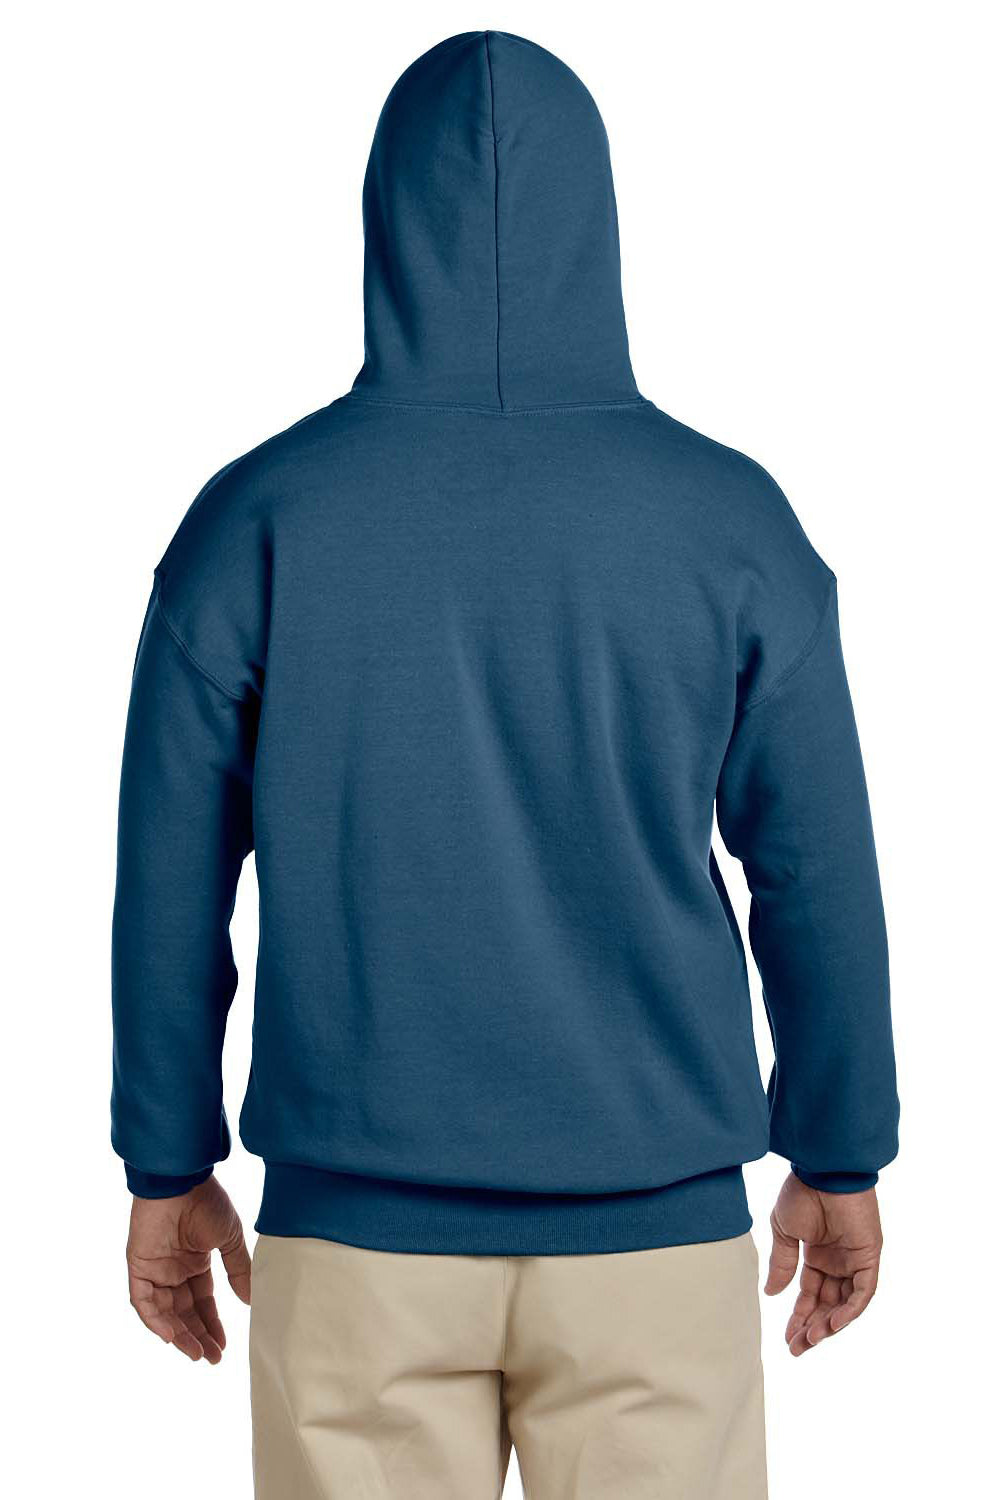 Gildan G185 Mens Hooded Sweatshirt Hoodie Indigo Blue Back